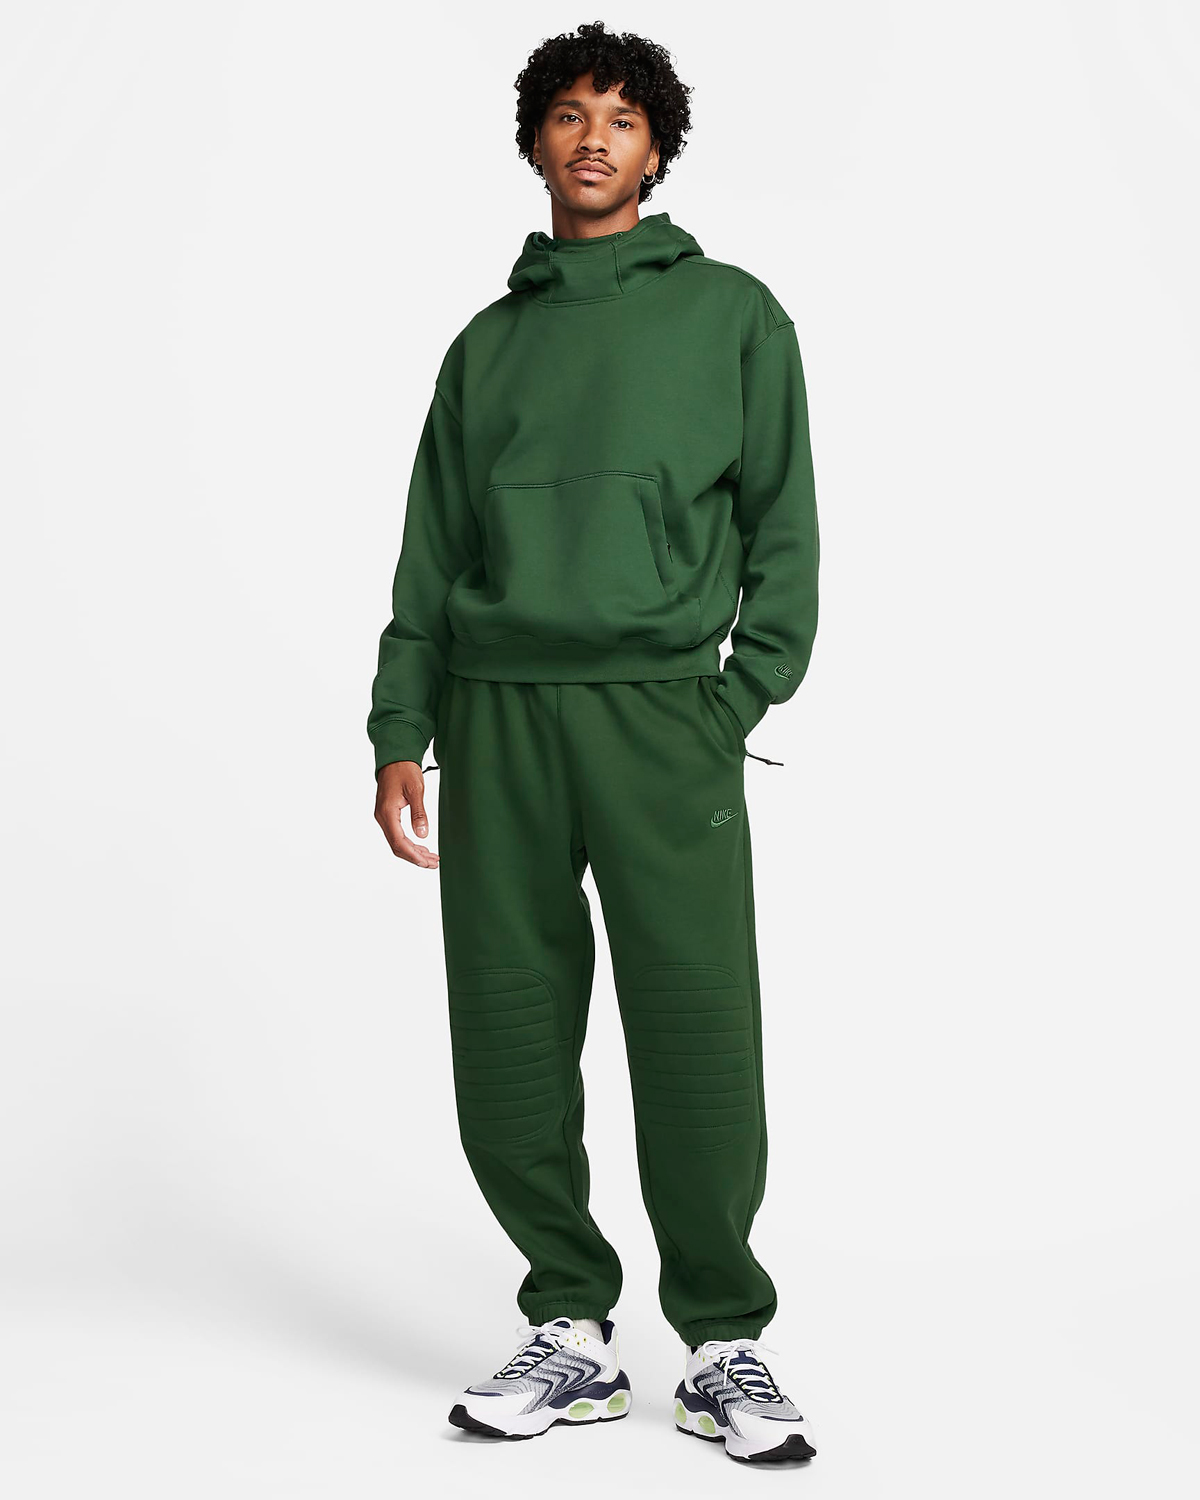 Nike-Sportswear-Tech-Pack-Winterized-Hoodie-Pants-Fir-Green